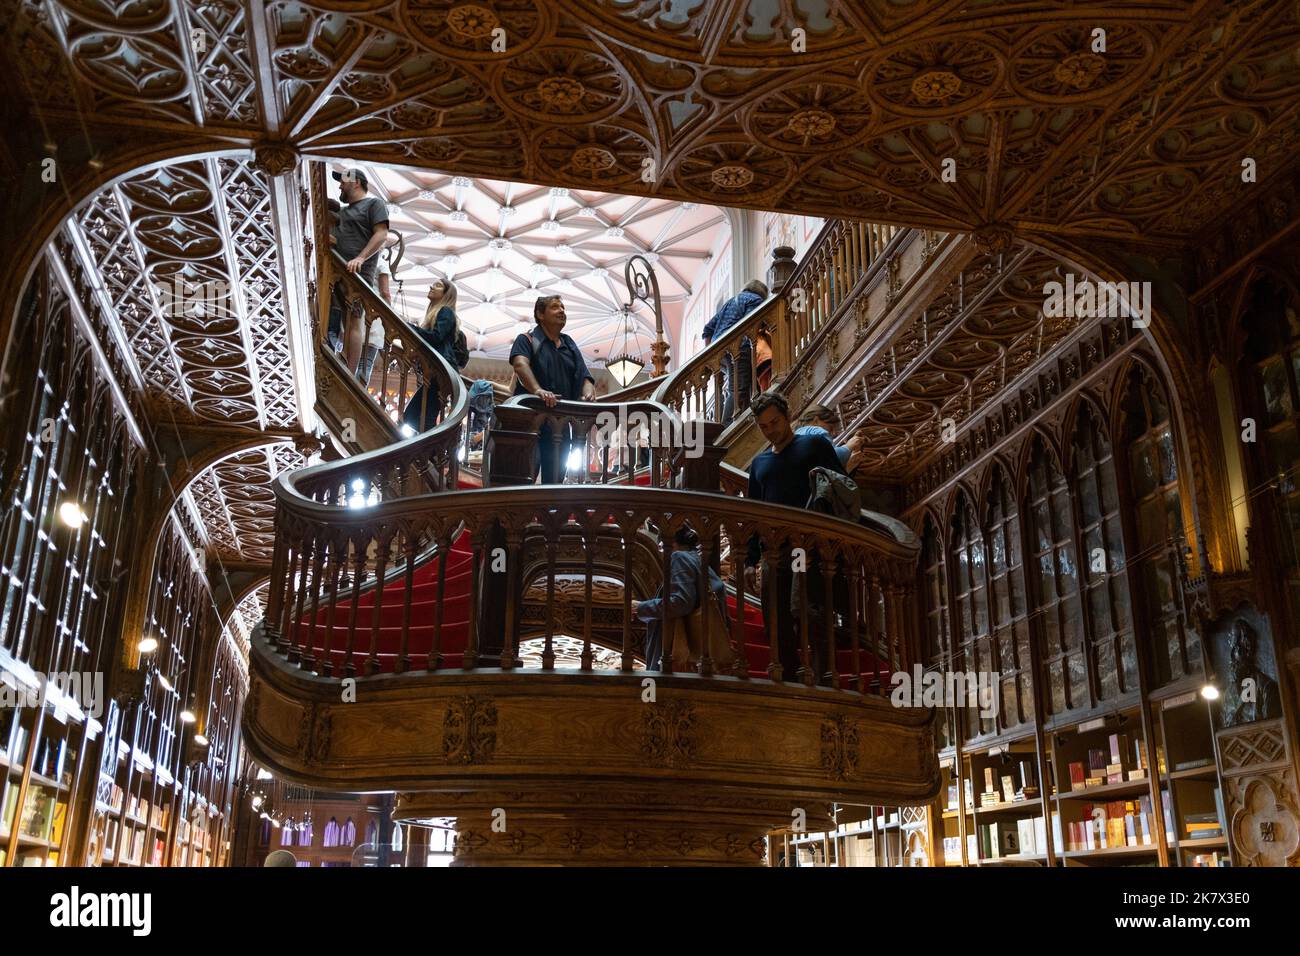 Il negozio di libri Livraria Lello che si dice abbia ispirato gli insiemi nei film di Harry Potter, scritto da JK Rowling. A Porto, Portogallo, 17 ottobre 2022. Foto Stock